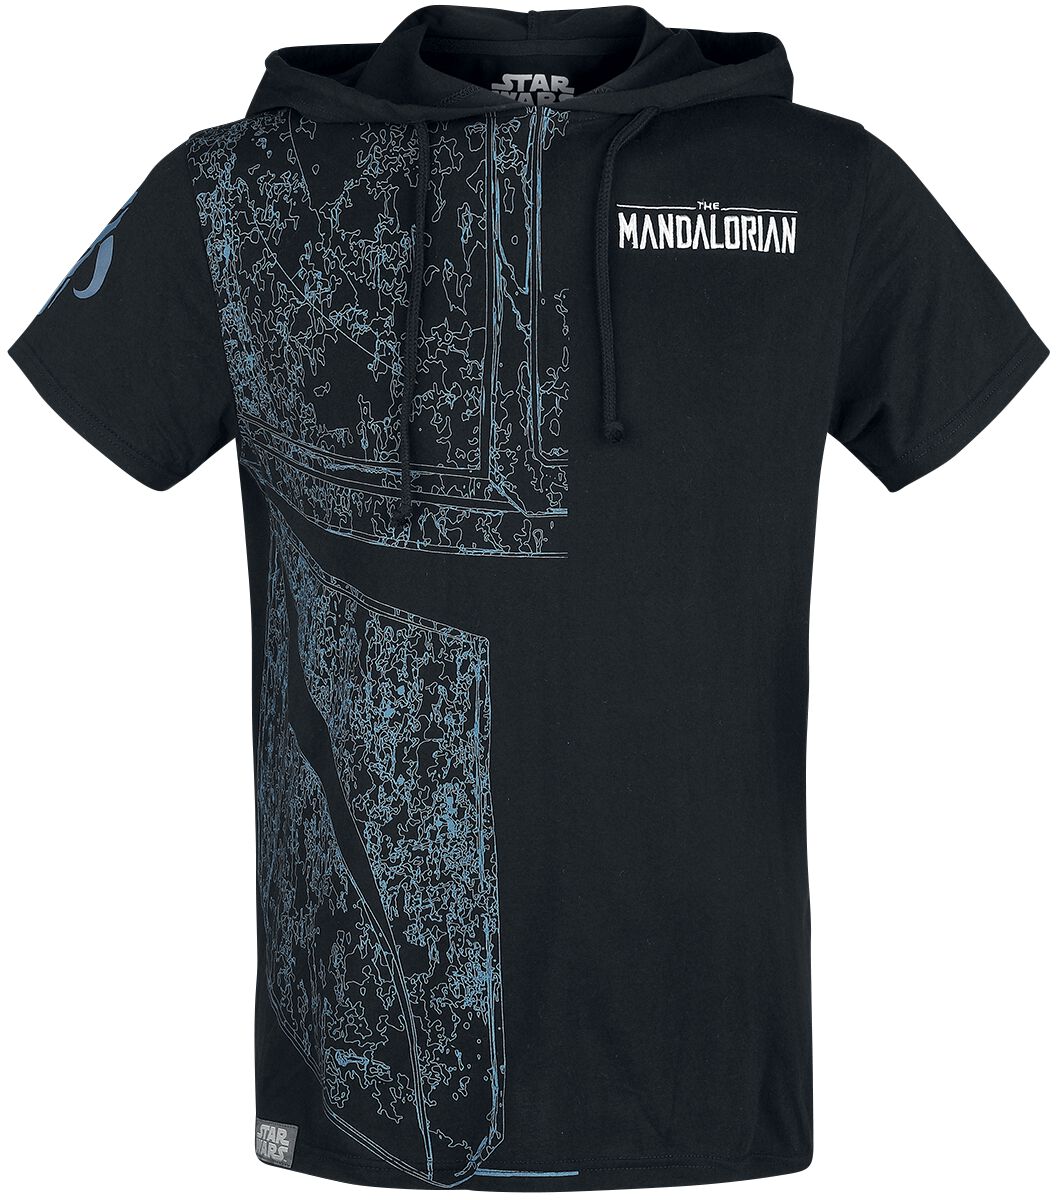 Star Wars T-Shirt - The Mandalorian - S bis XXL - für Männer - Größe L - schwarz  - EMP exklusives Merchandise!